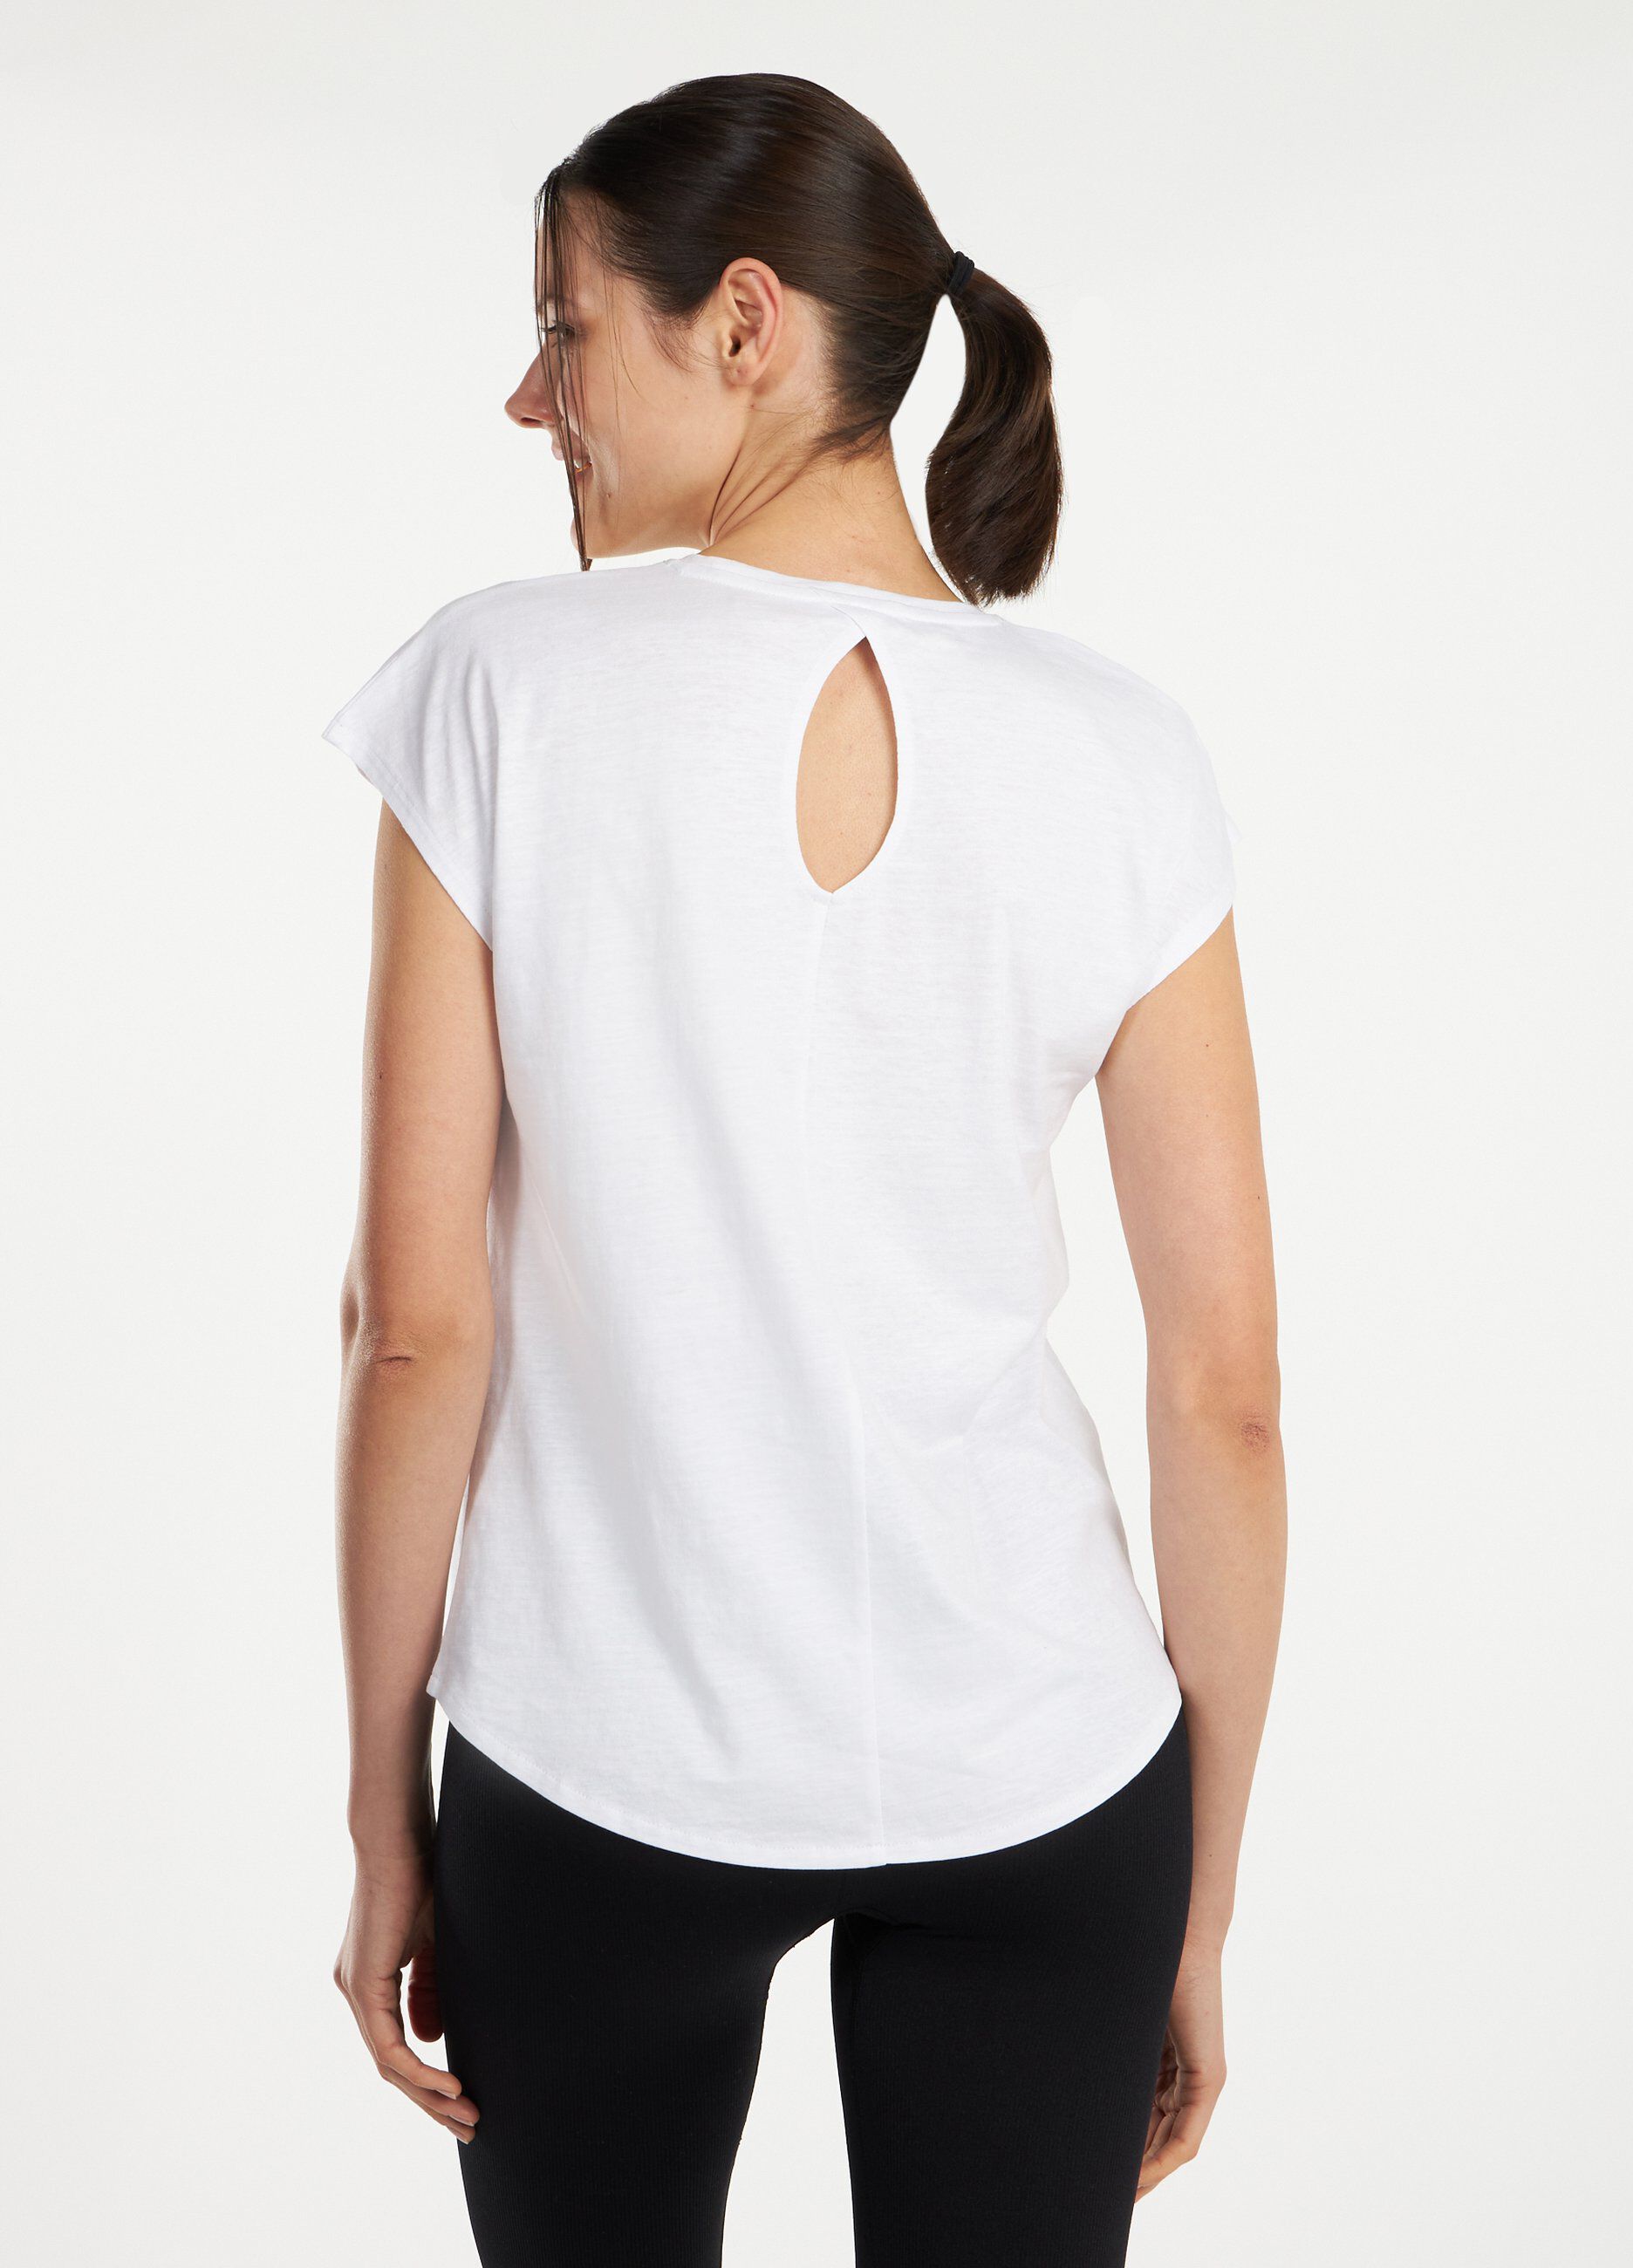 T-shirt Holistic fitness in puro jersey di cotone donna_1